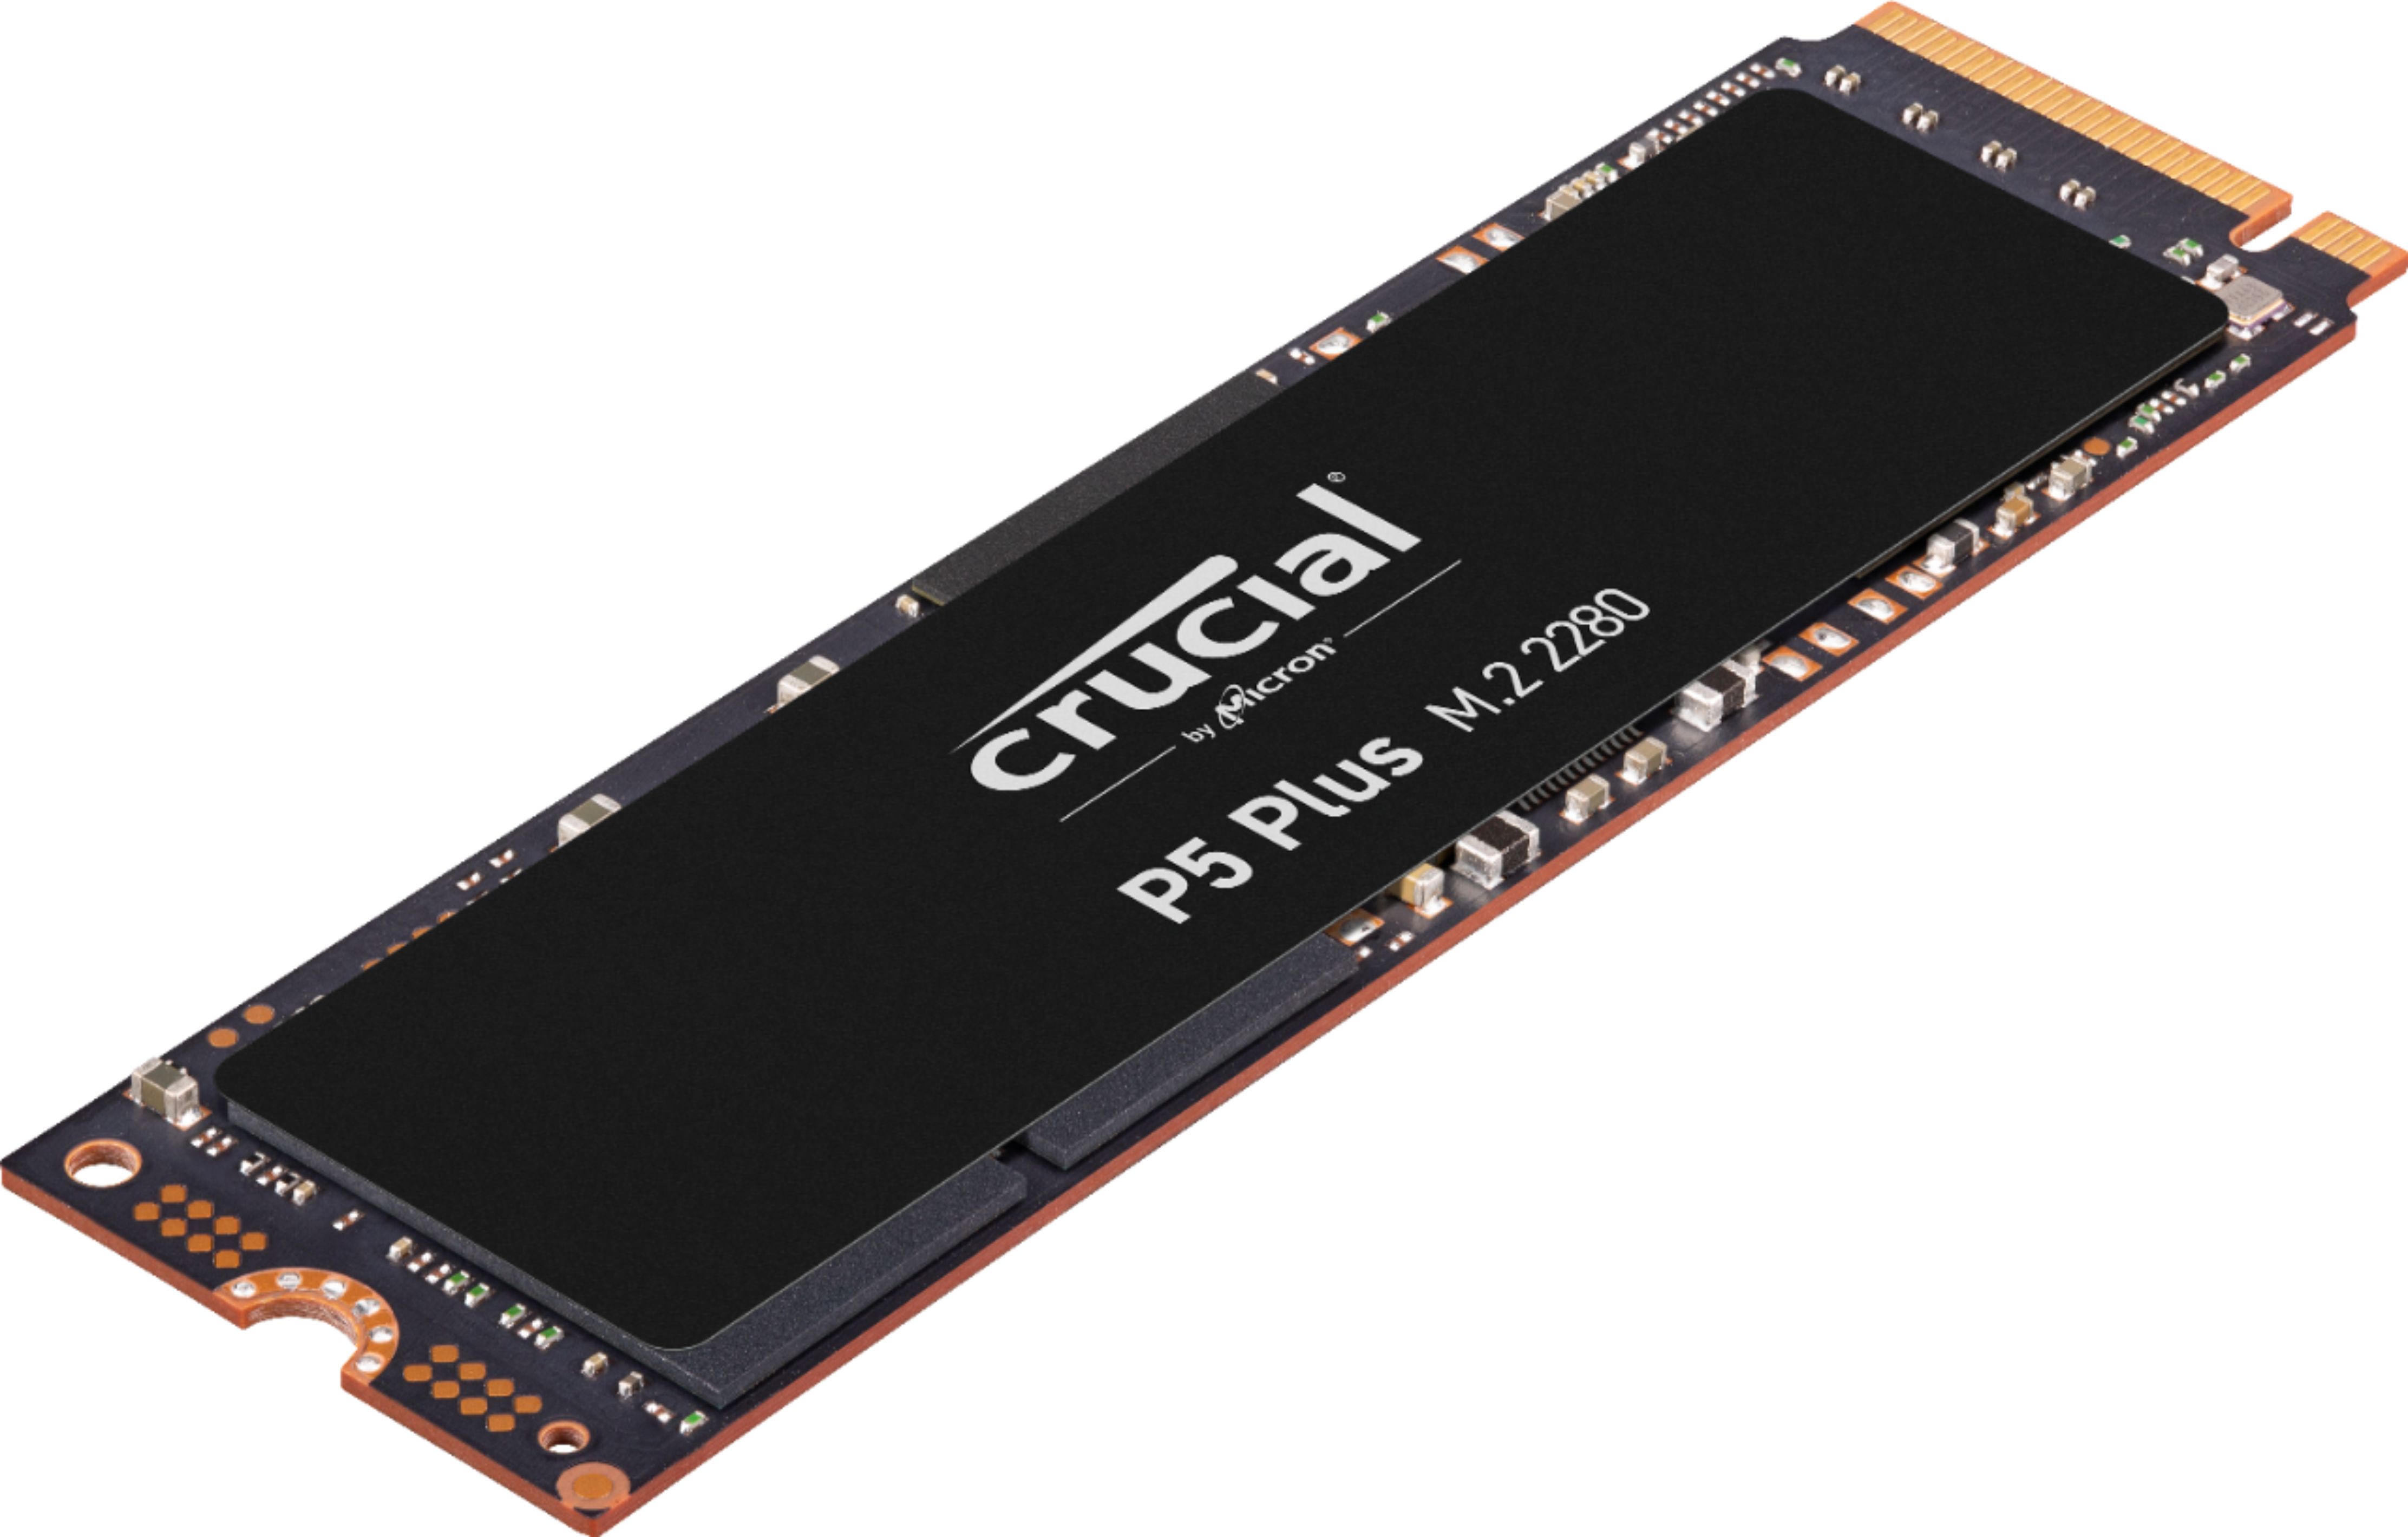 Crucial P5 Plus 1TB Internal SSD PCIe Gen 4 x4 NVMe 